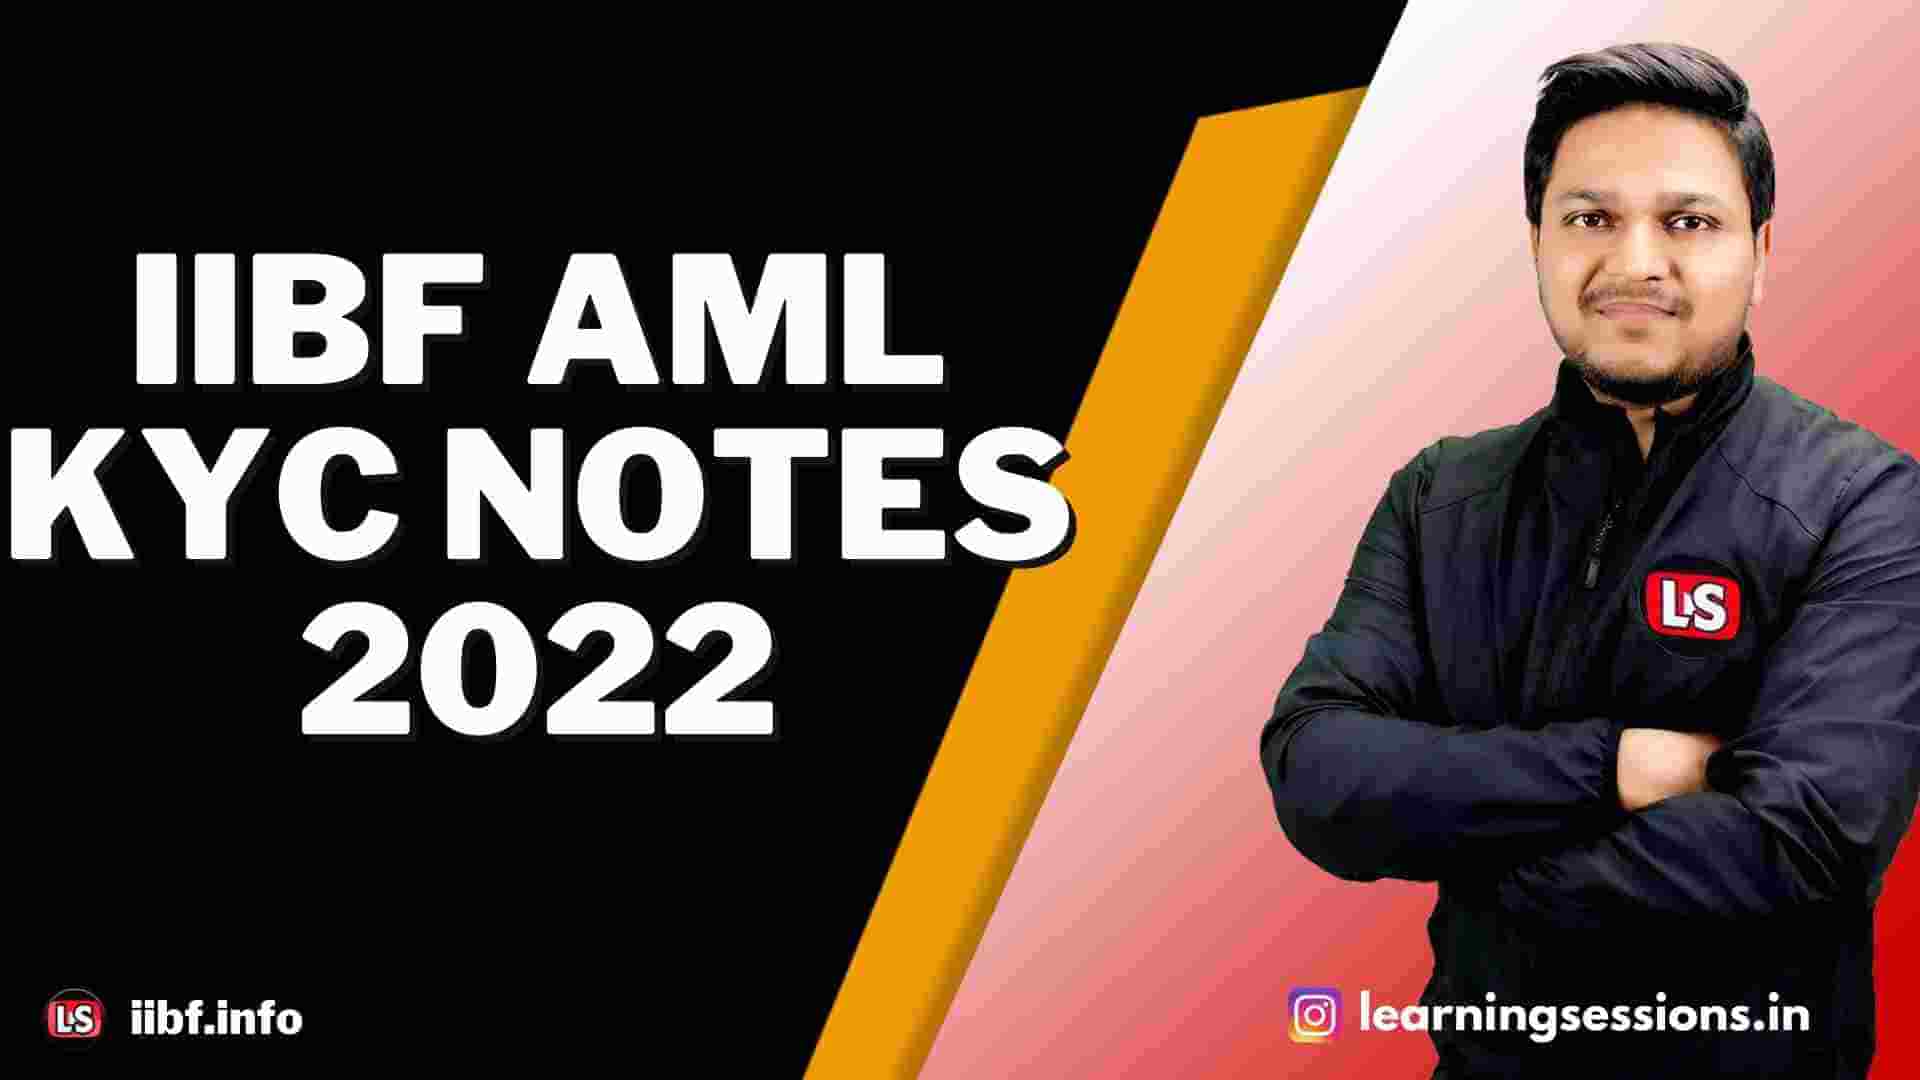 IIBF AML KYC NOTES 2022